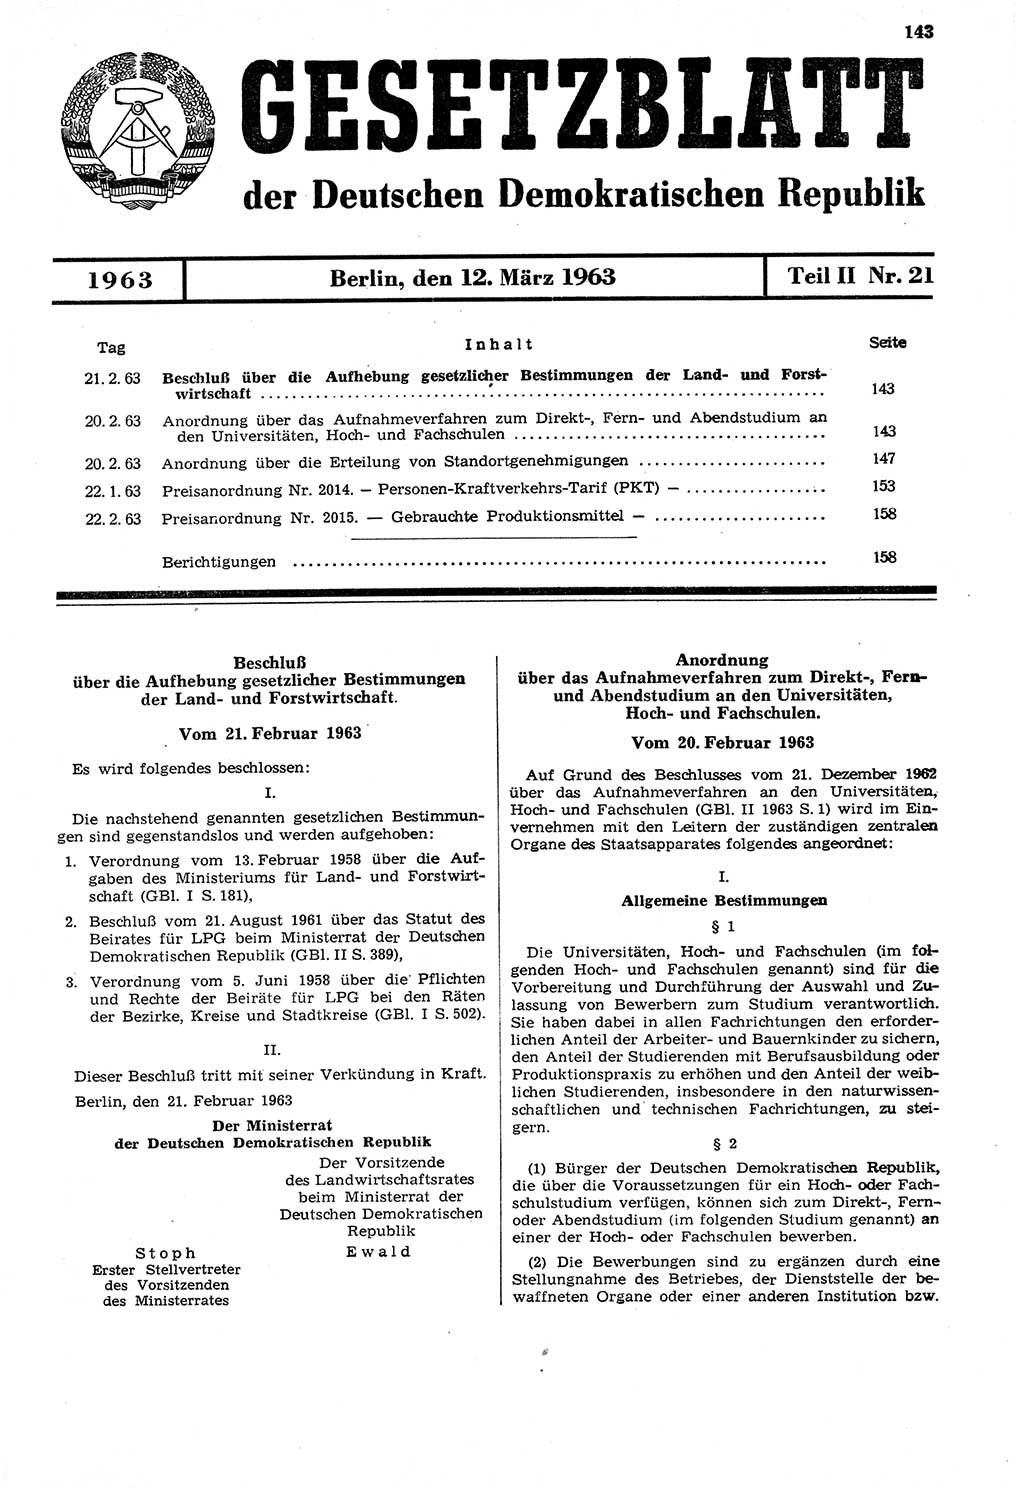 Gesetzblatt (GBl.) der Deutschen Demokratischen Republik (DDR) Teil ⅠⅠ 1963, Seite 143 (GBl. DDR ⅠⅠ 1963, S. 143)